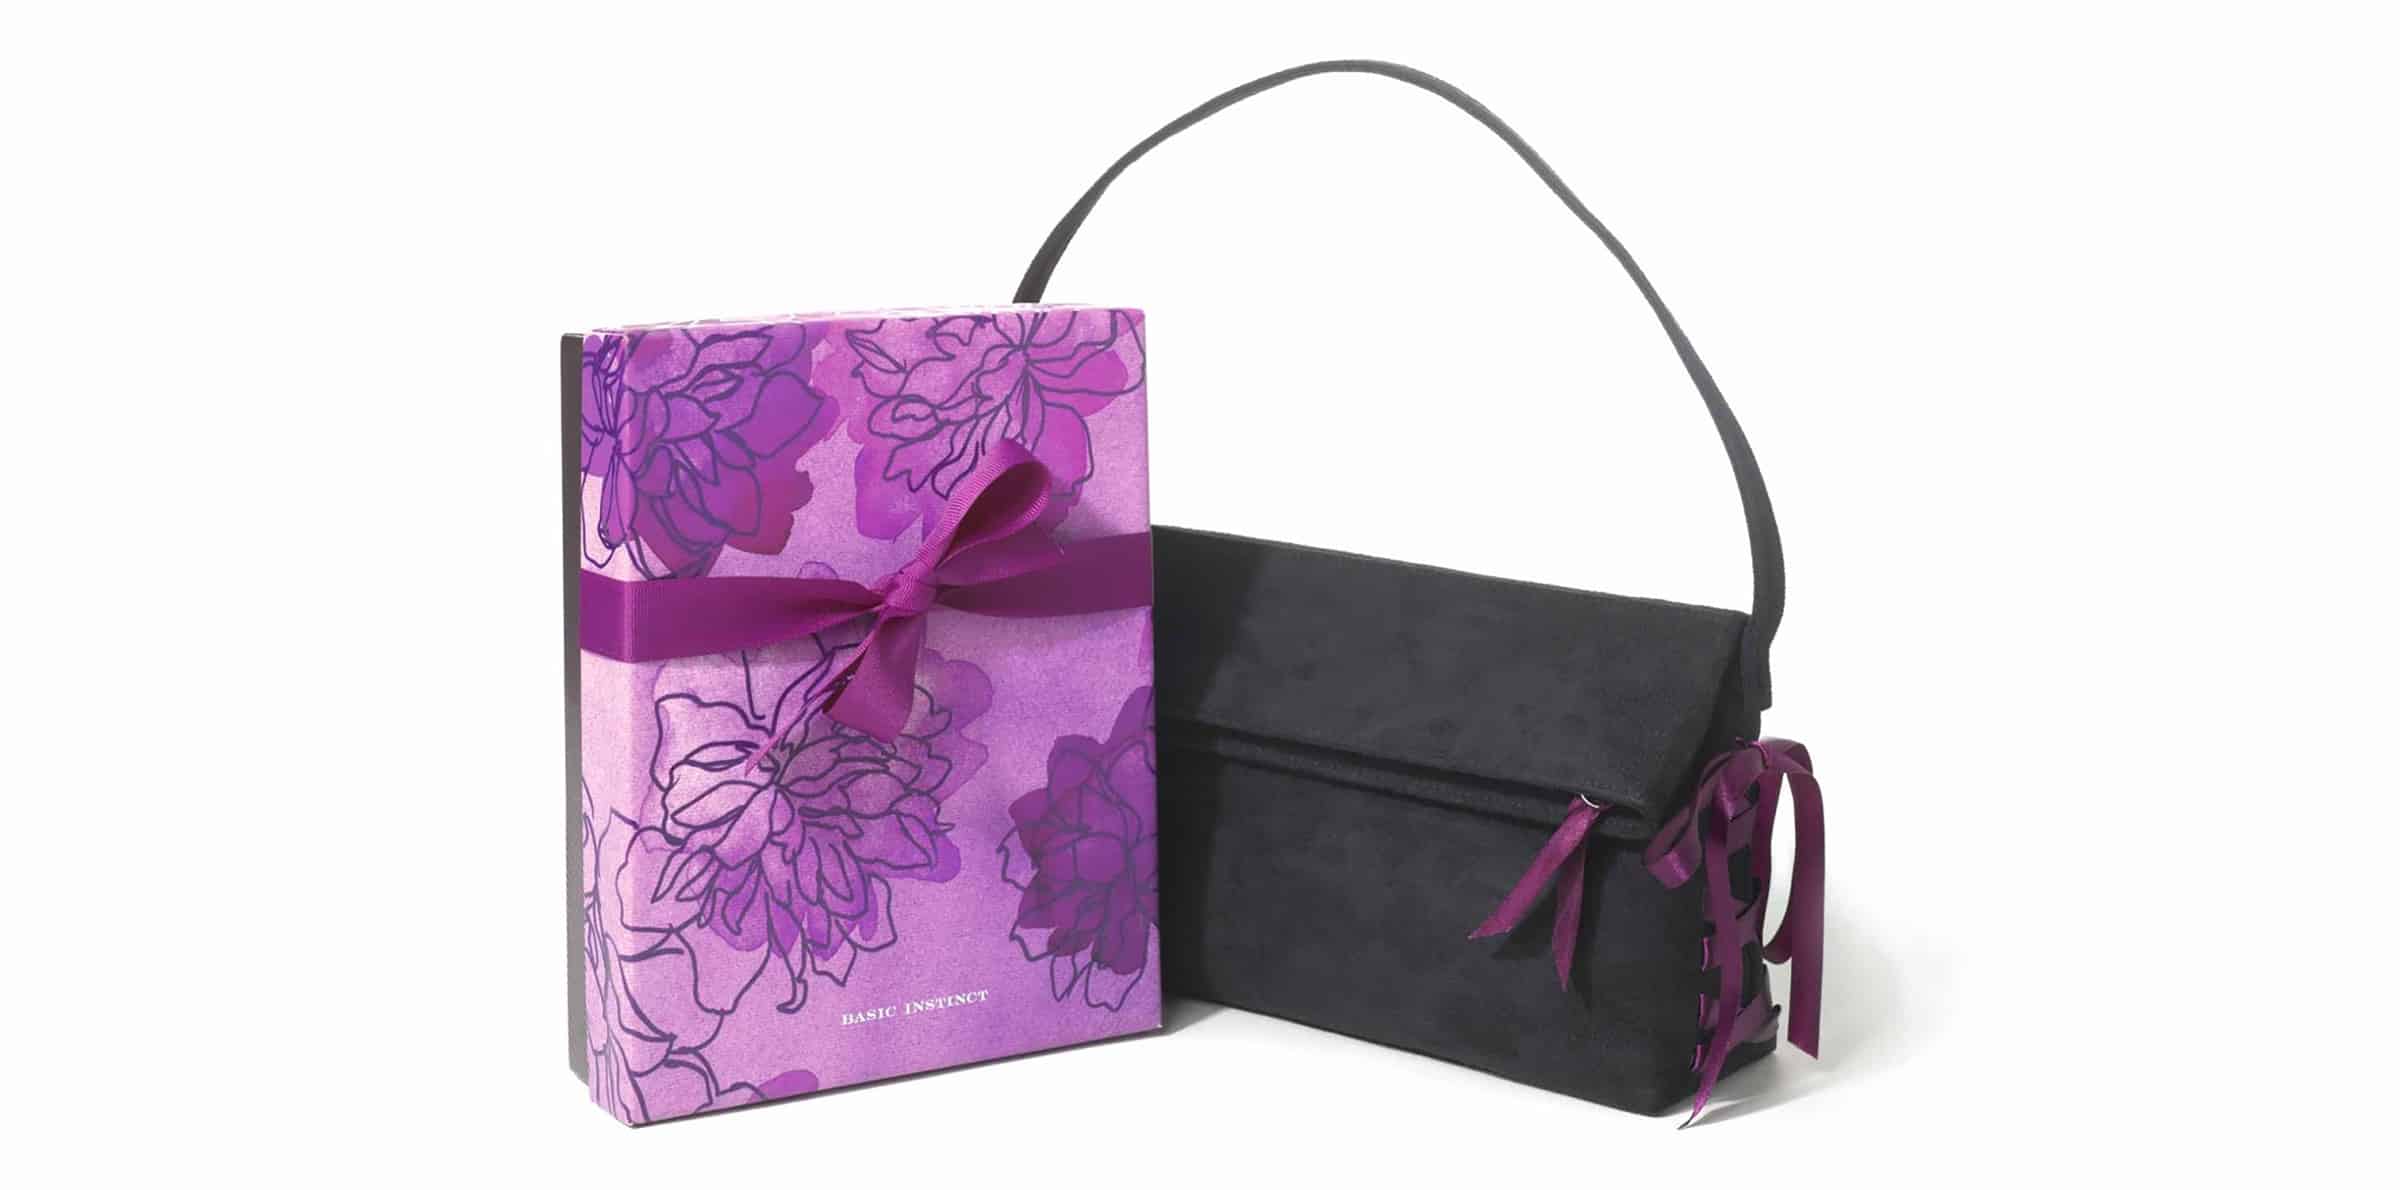 Design gift box packaging for Victoria's Secret Basic Instinct gift set design with black handbag and floral box.